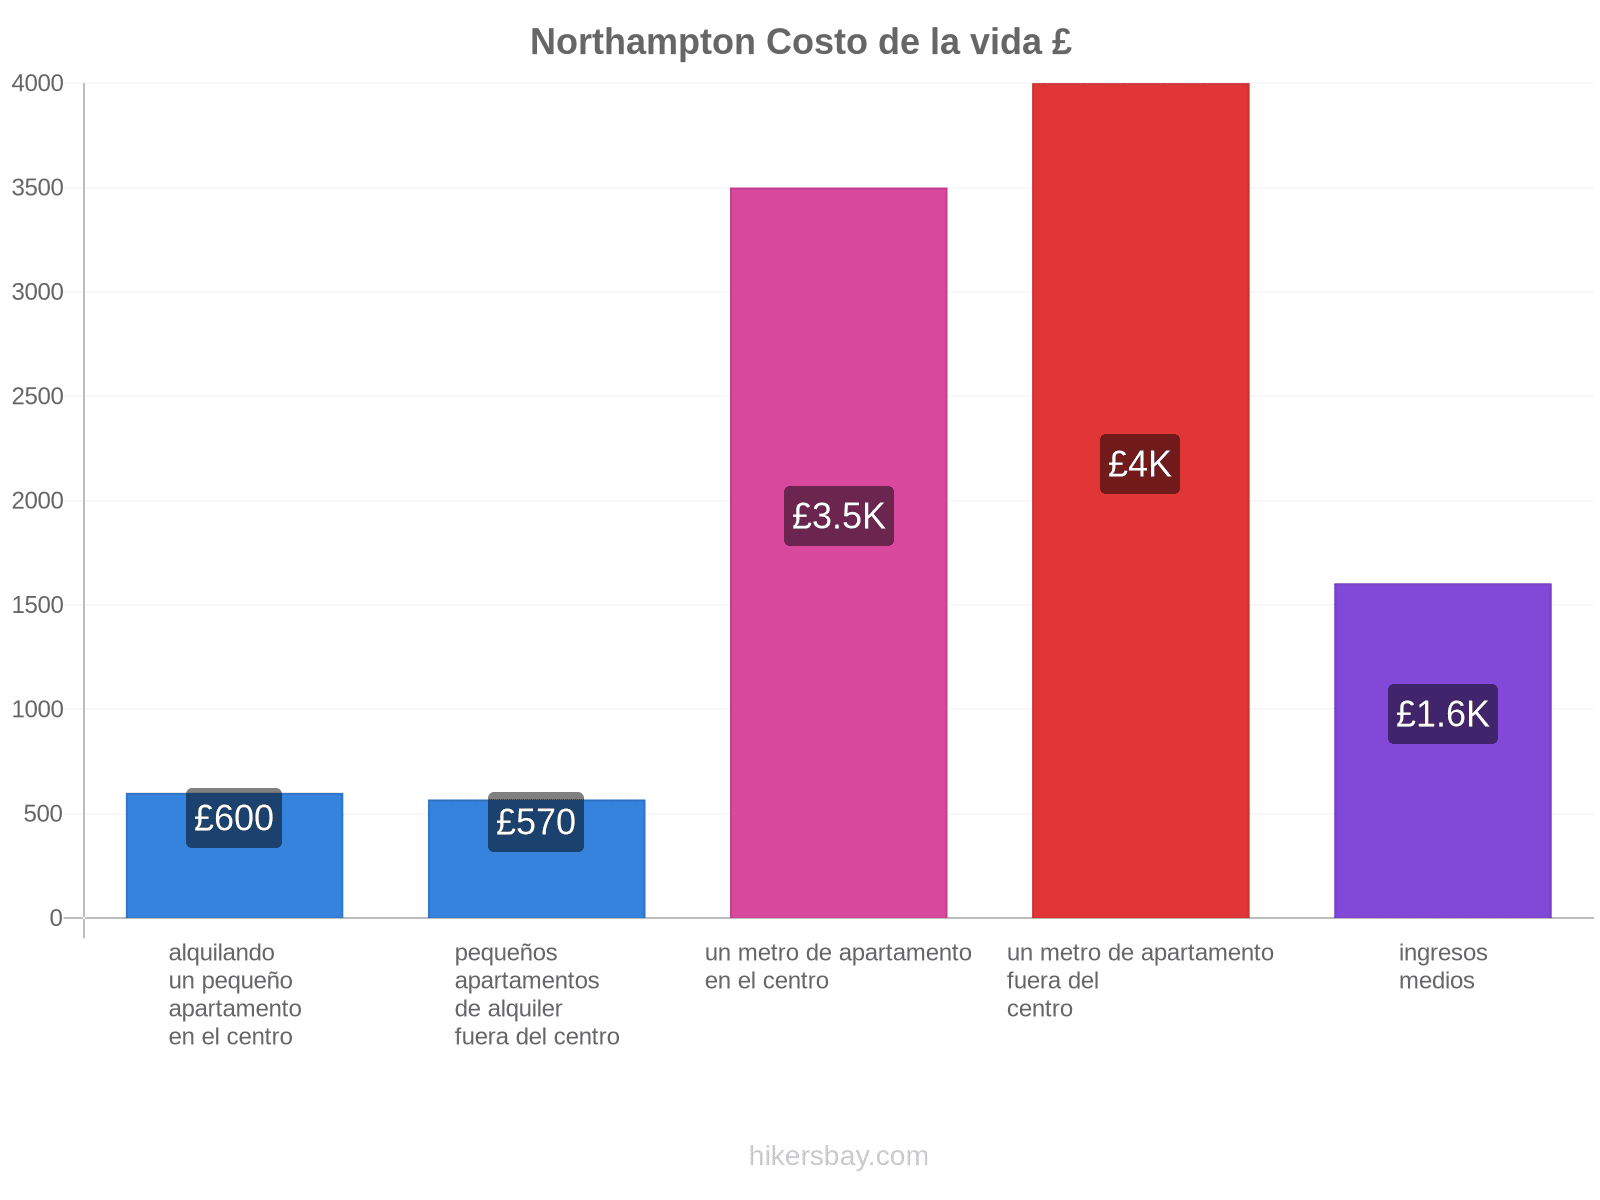 Northampton costo de la vida hikersbay.com